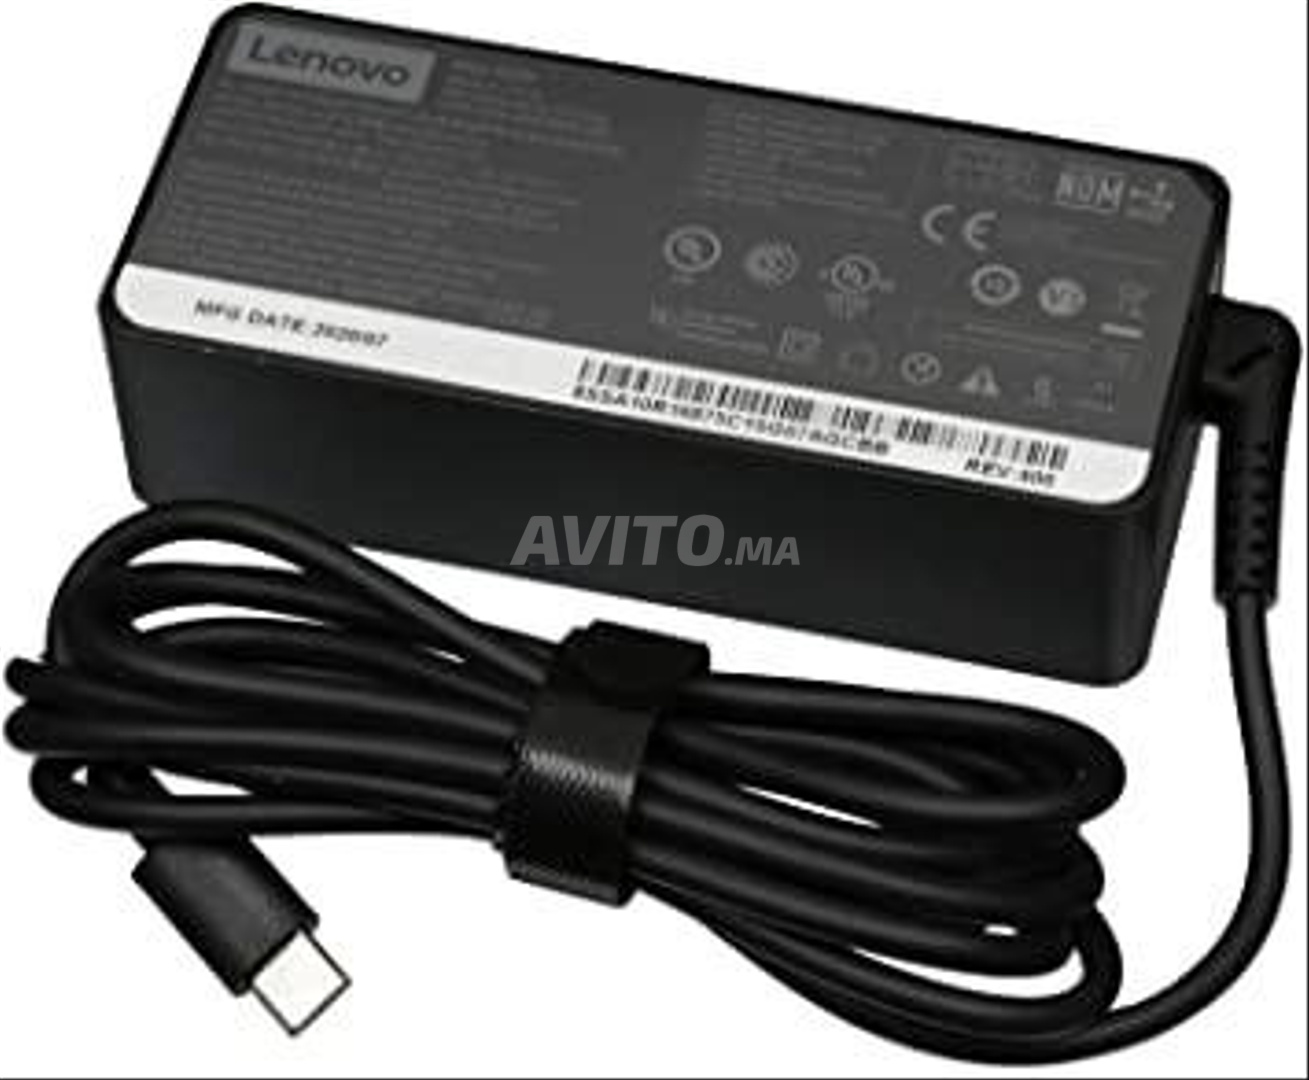 Lenovo Chargeur Adaptateur AC 65W - AC Charger Adapter 65W - Noir à prix  pas cher